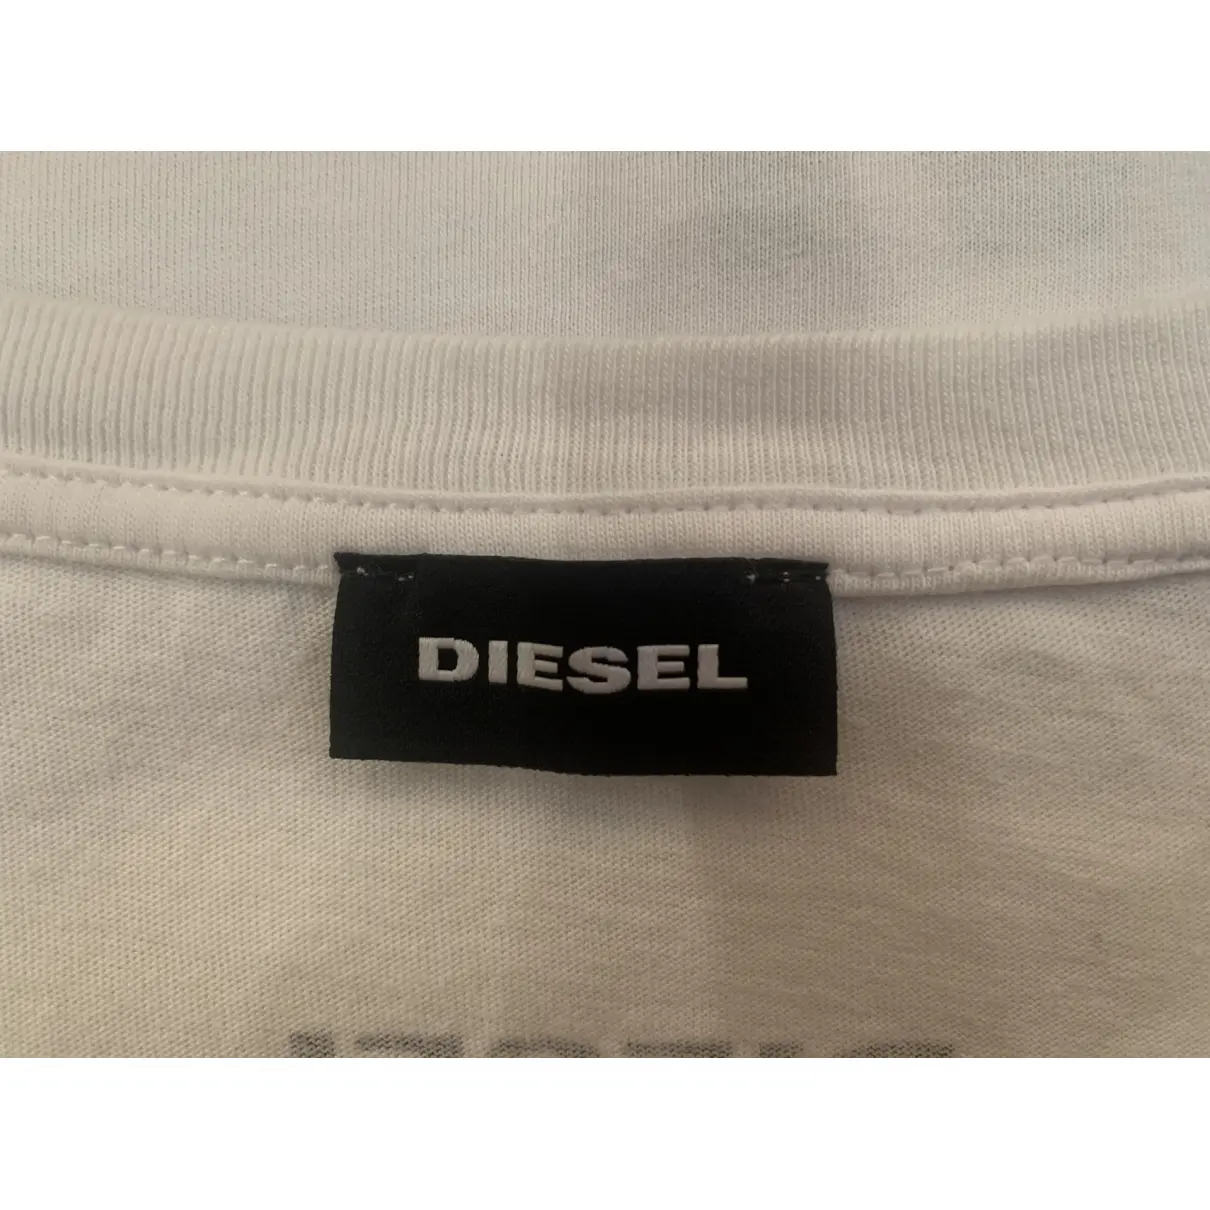 Buy Diesel T-shirt online